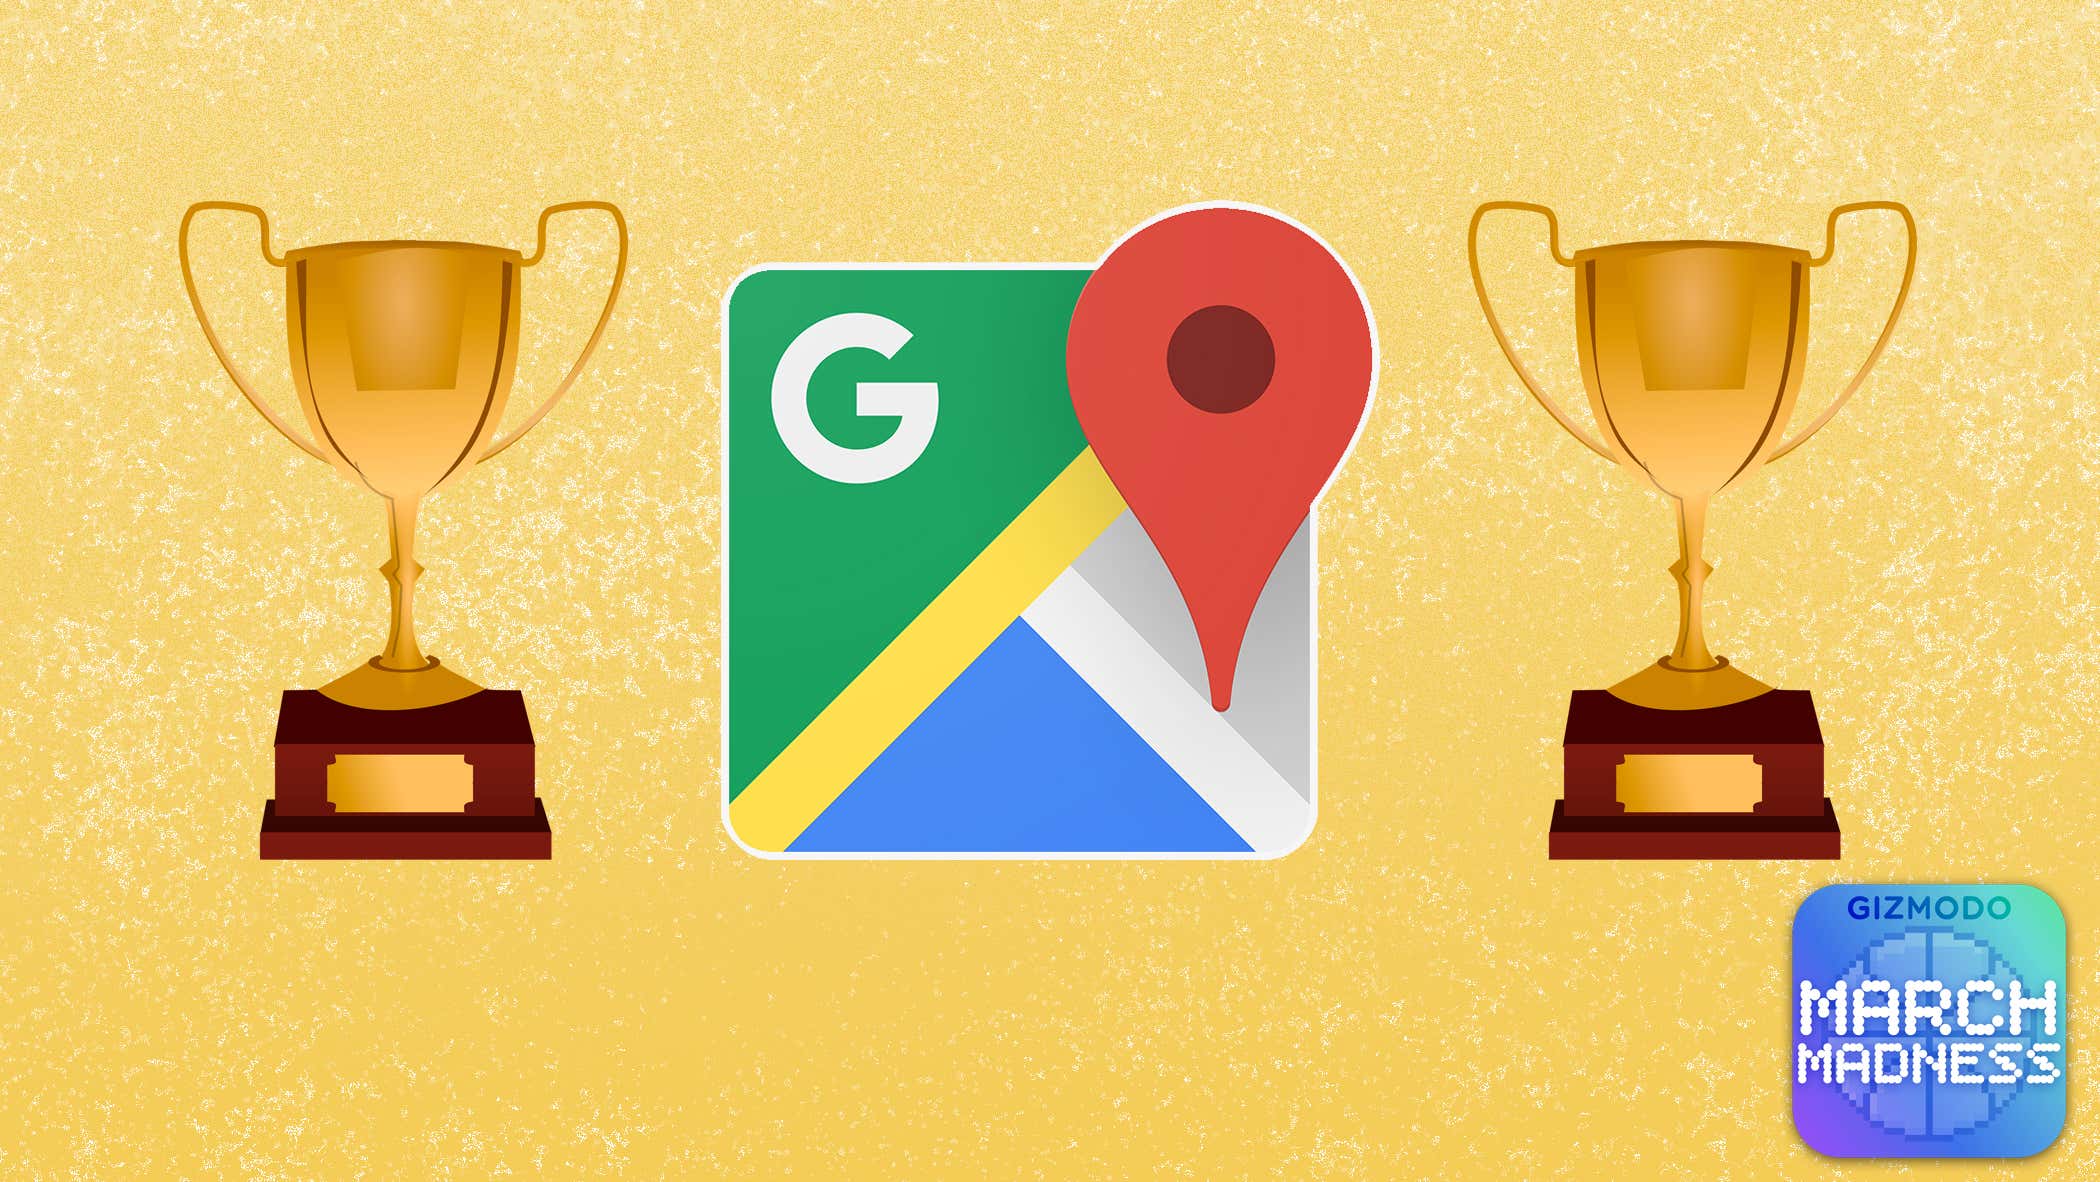 Google Haritalar Resmi Olarak Tüm Zamanların En Harika Uygulaması başlıklı makalenin resmi